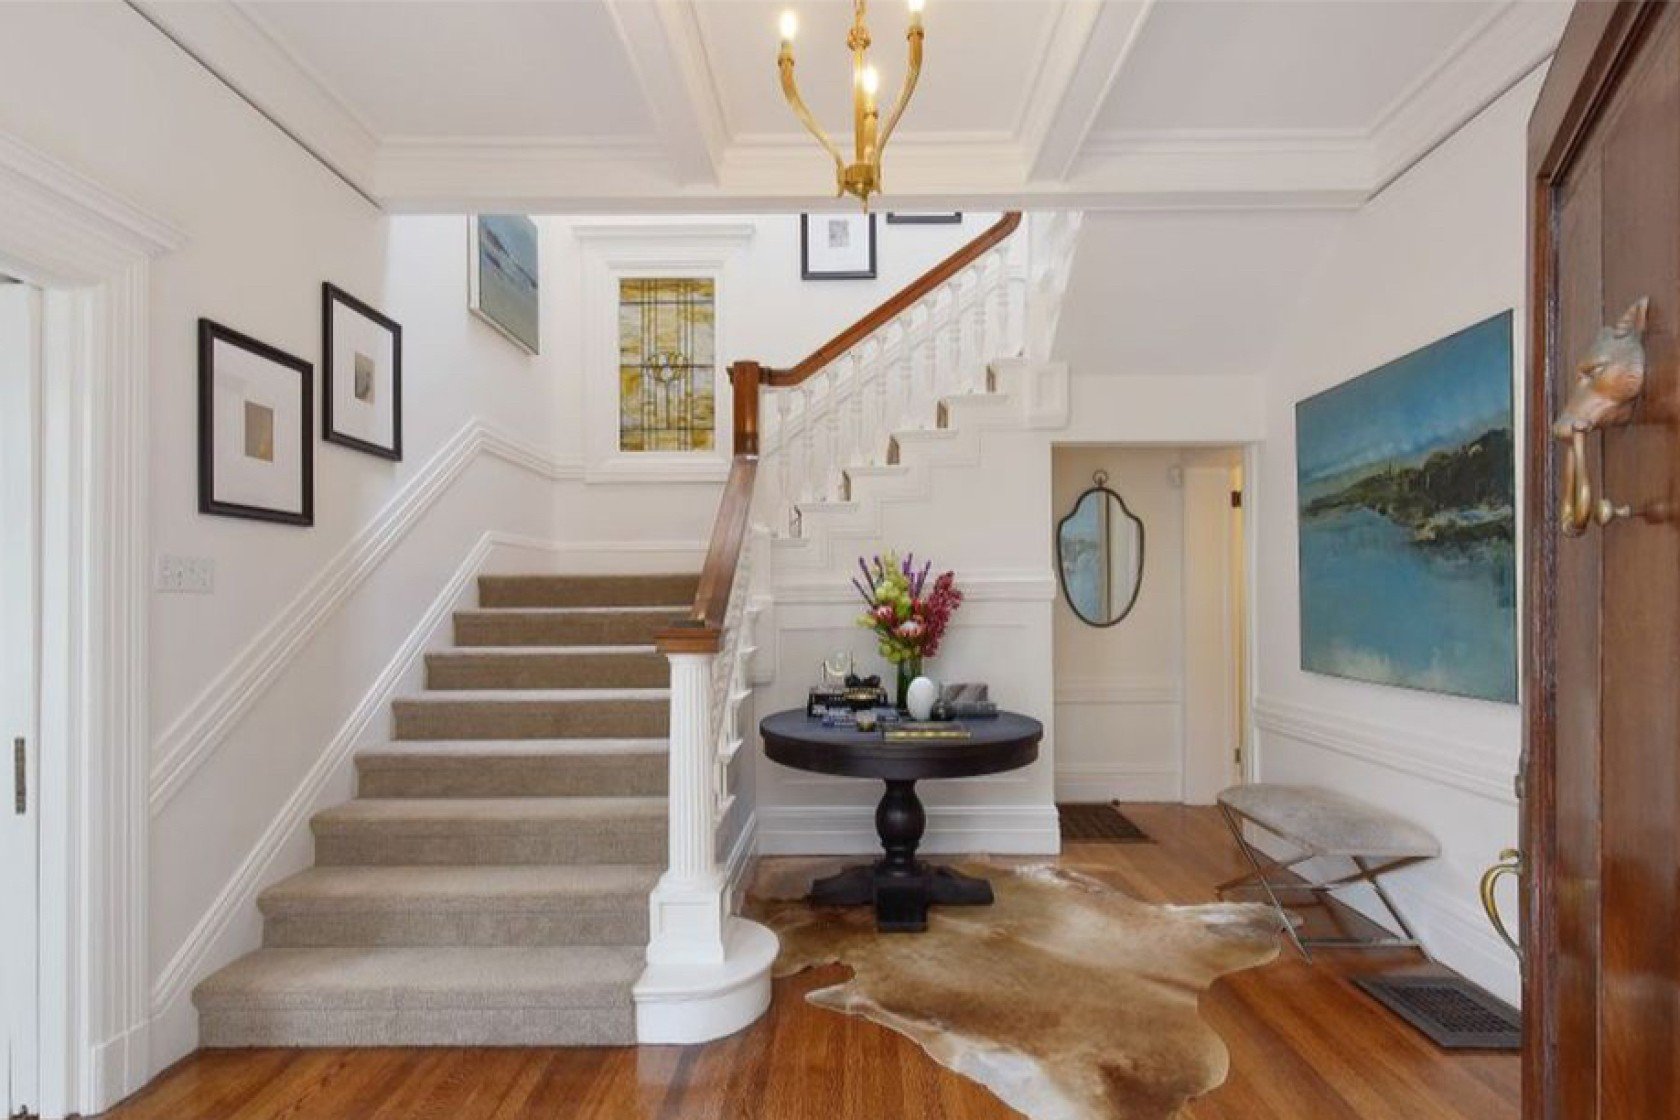 Джулия Робертс купила дом за 8,3 миллионов долларов, и вот как он выглядит - фото 469982